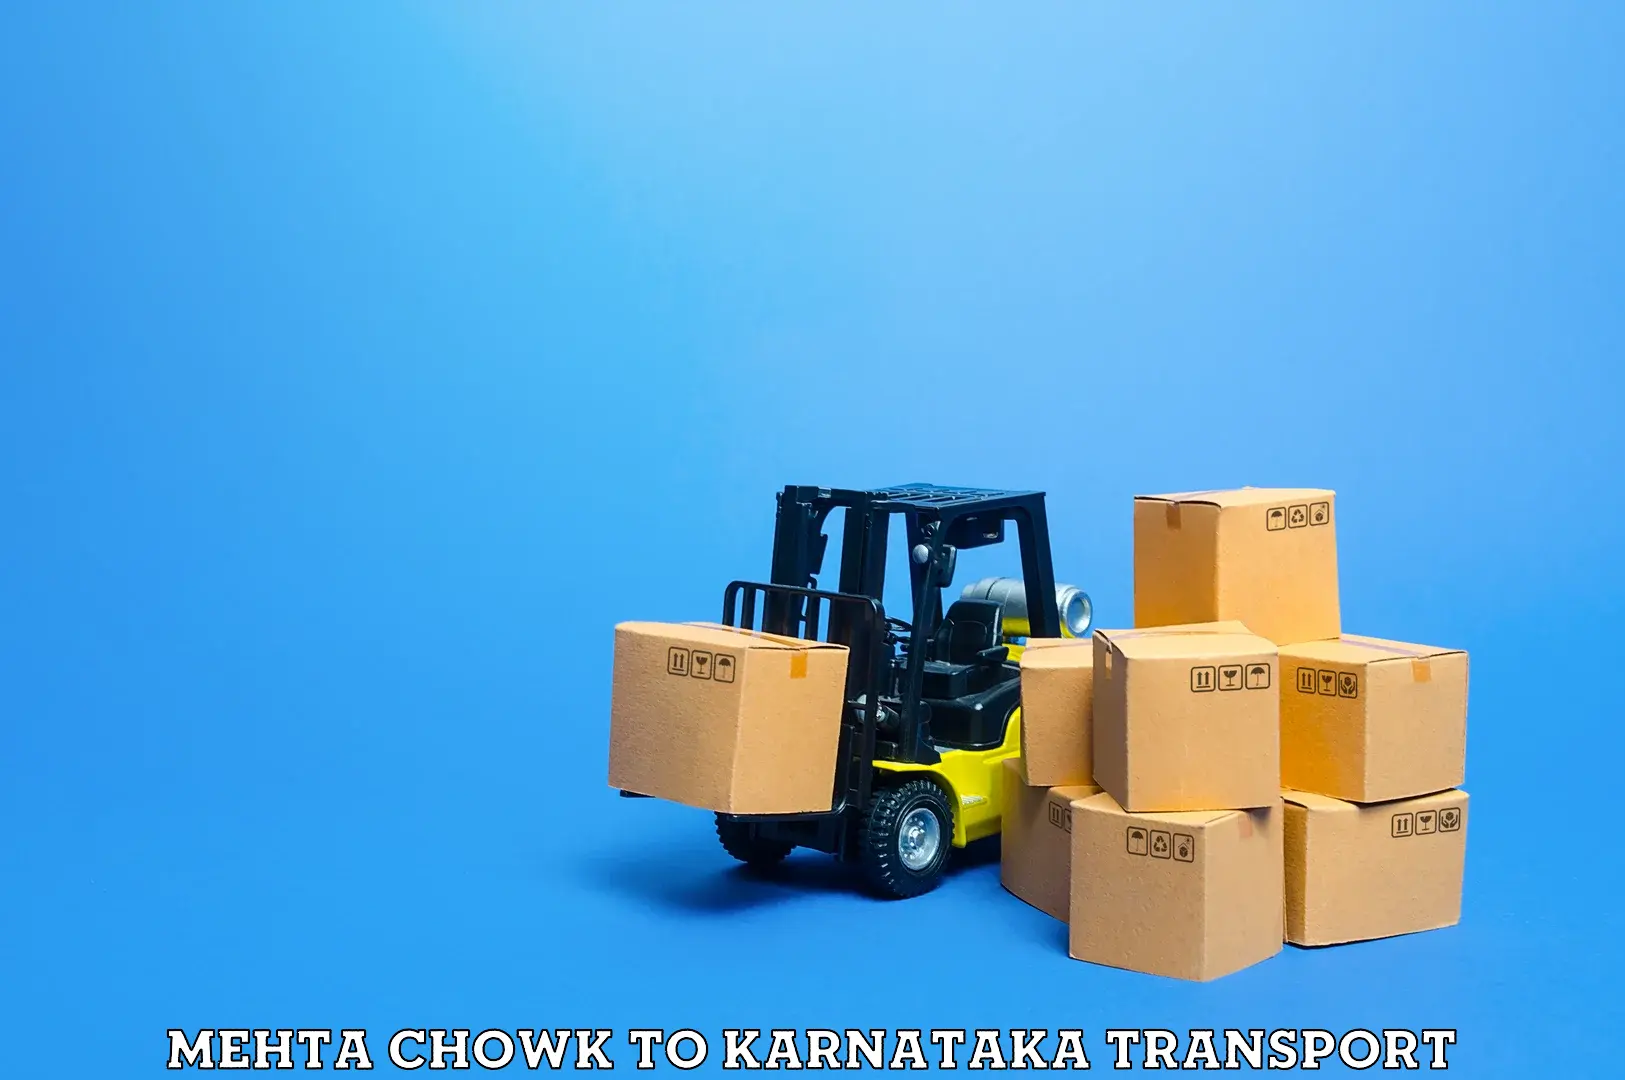 Shipping partner Mehta Chowk to Dharmasthala